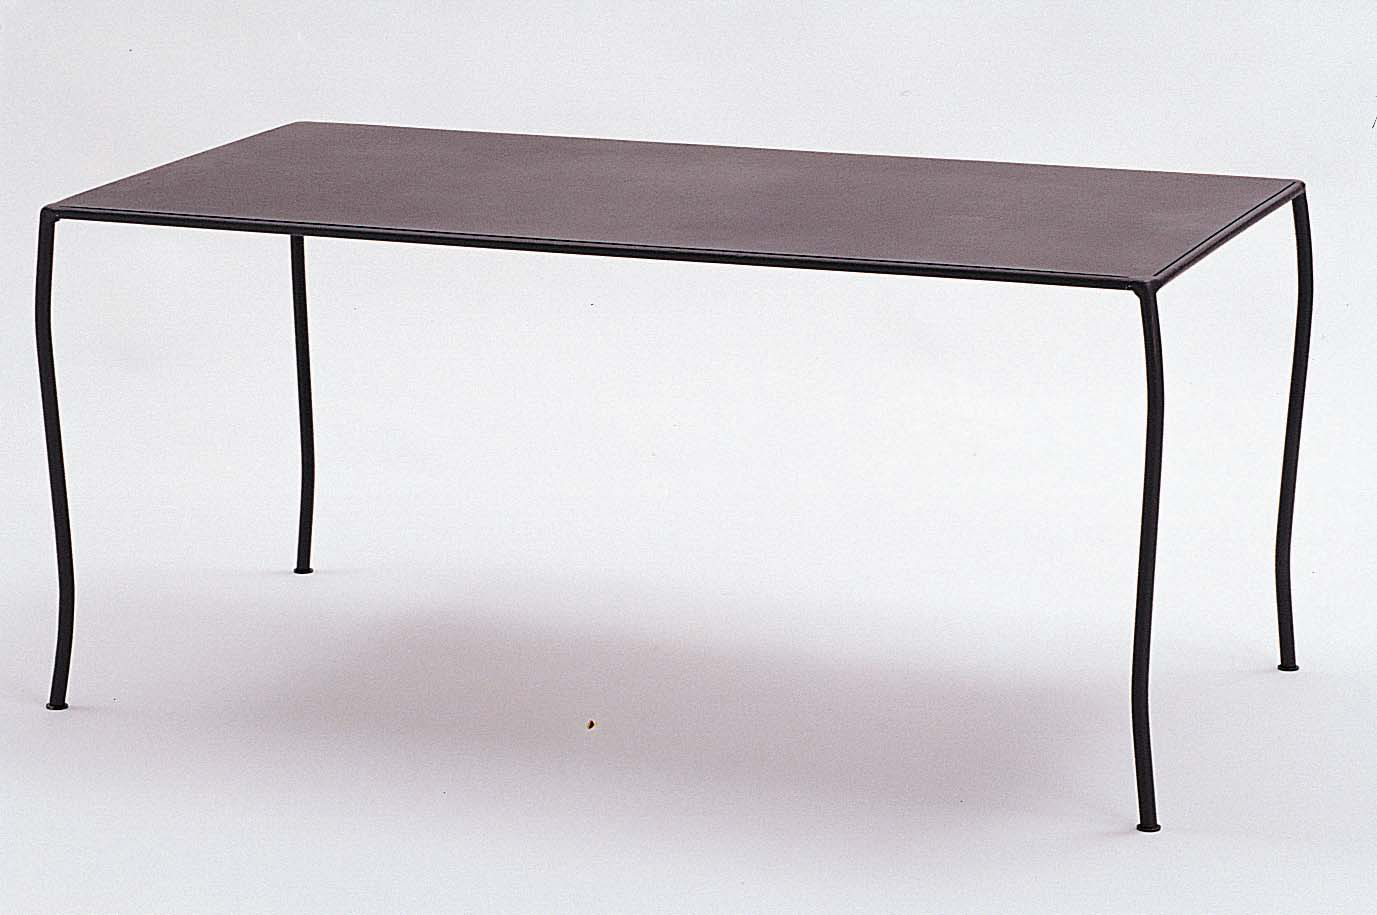 KA Tisch Oxido groß (889002) - auch in weiß erhältlich (808082)